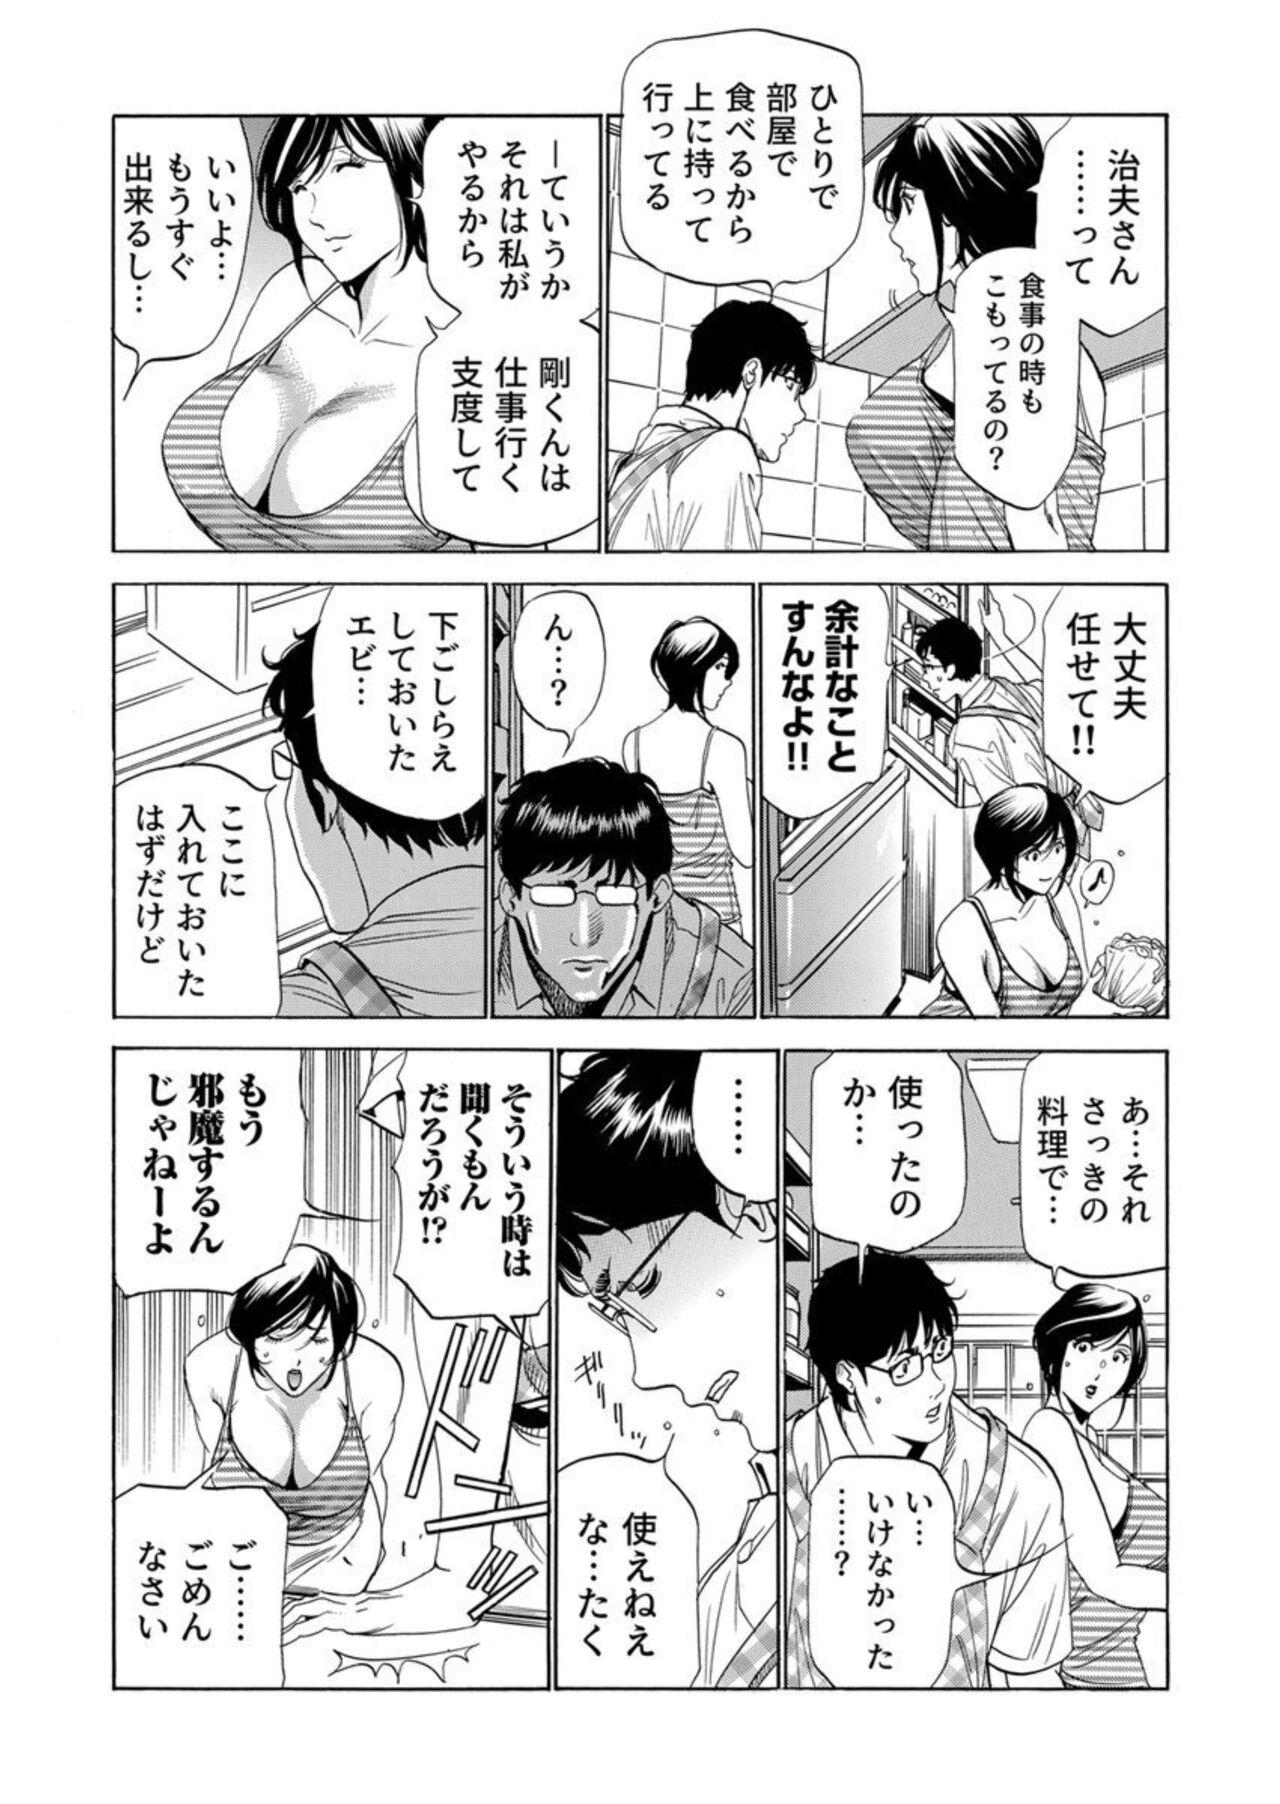 Gostosas Totsugisaki wa Tsureko ga 9 nin!? Gibo, Musukotachi to no sei Kankei ni Nayamu 2 Tongue - Page 9